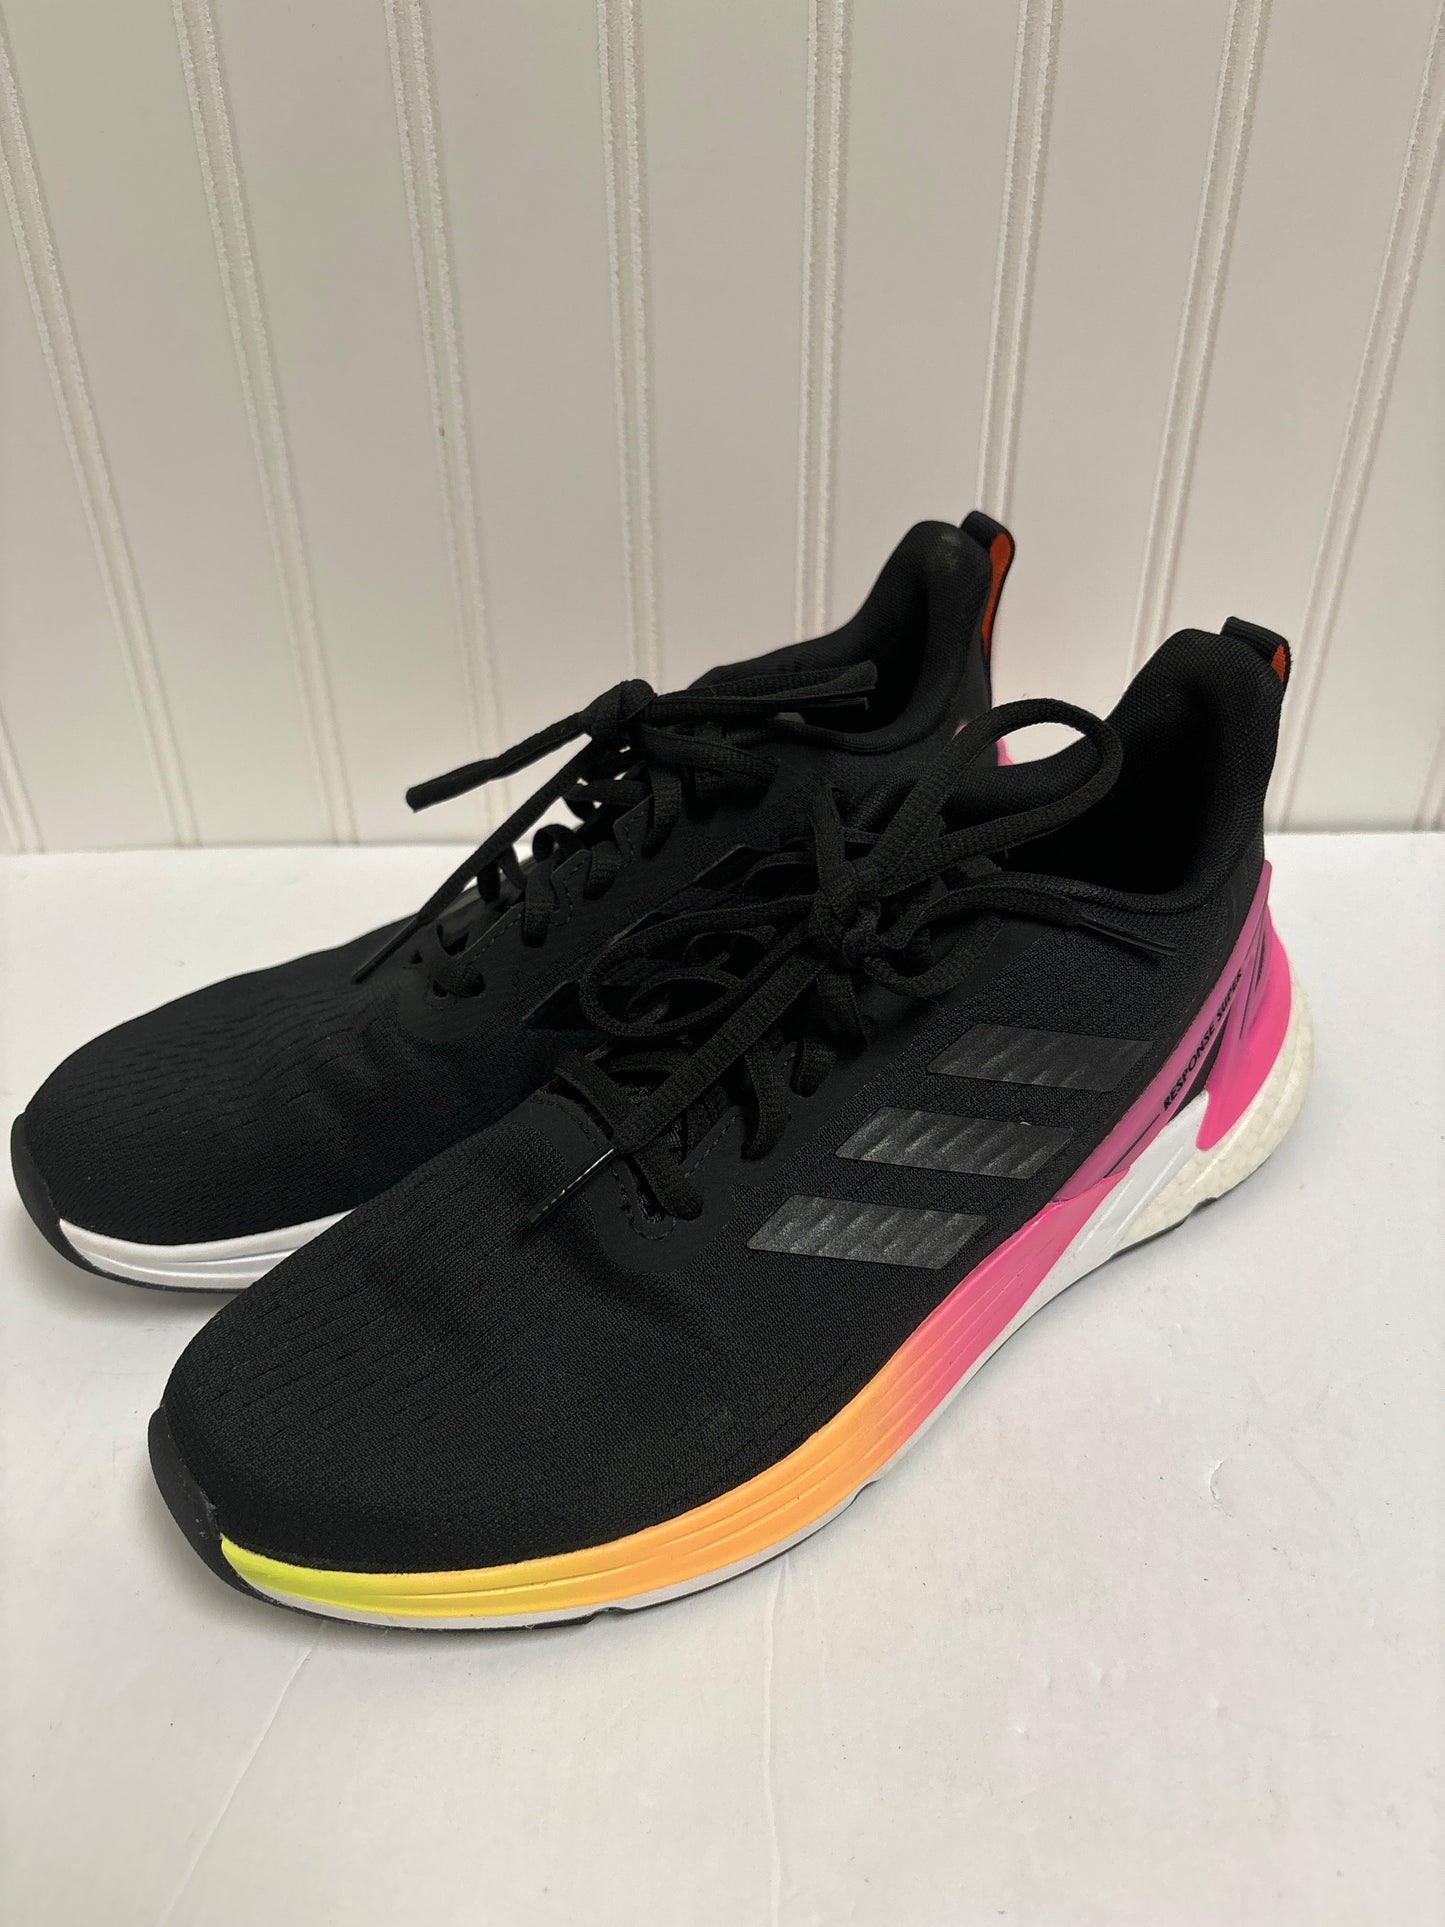 Black Shoes Athletic Adidas, Size 8